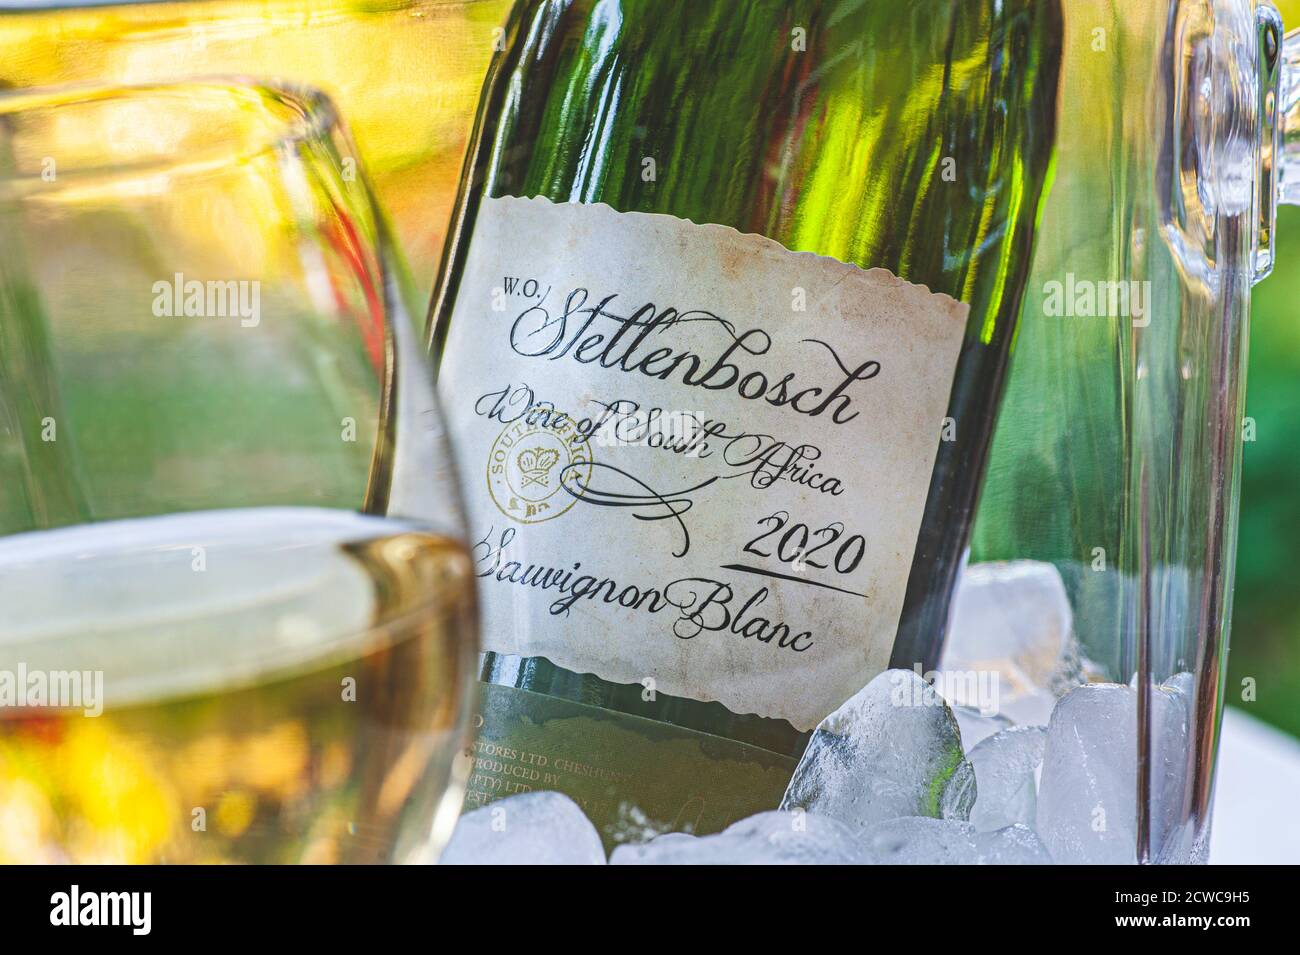 Stellenbosch 2020 Afrique du Sud Sauvignon blanc bouteille de verre de vin et seau à glace en plein air ensoleillé d'été situation de jardin, avec labe postdaté de bouteille Banque D'Images